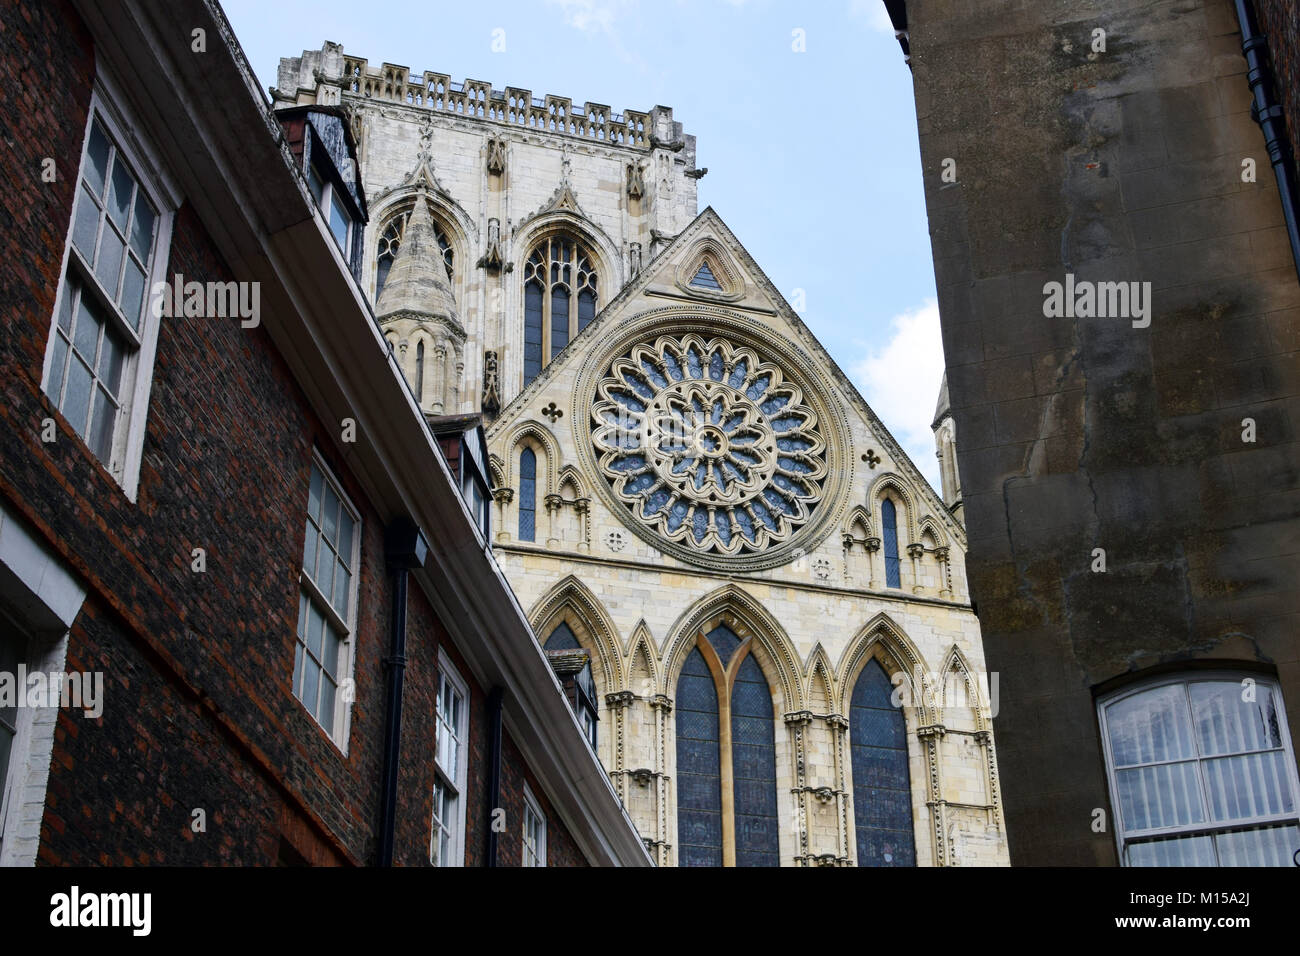 Il rosone della cattedrale di York Minster, come visto da un lato della strada Foto Stock